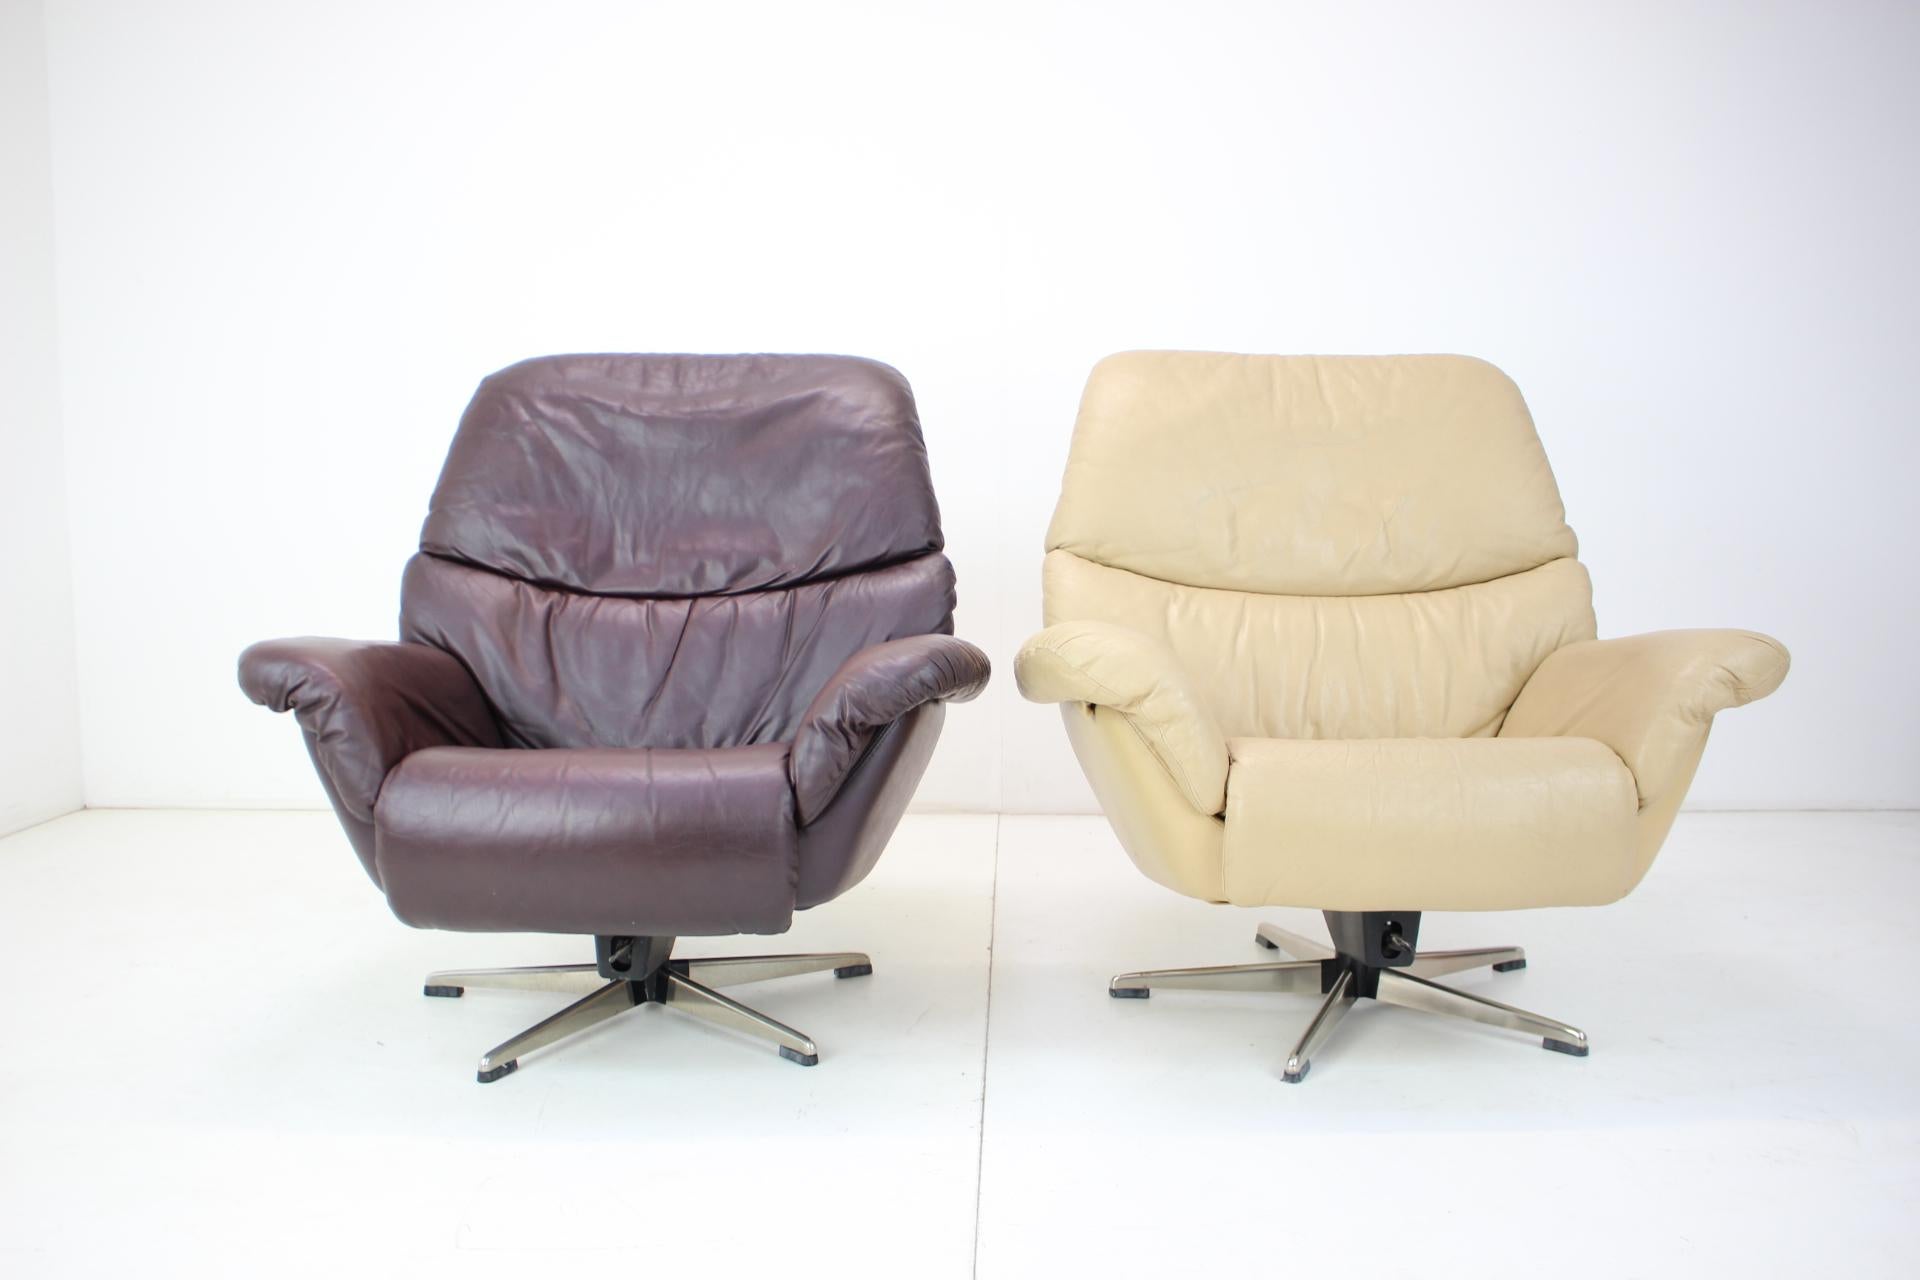 -Schaukelmechanismus
-Sehr komfortabel
-Hergestellt aus Leder
-Guter Originalzustand
-Sitzhöhe 41 cm.